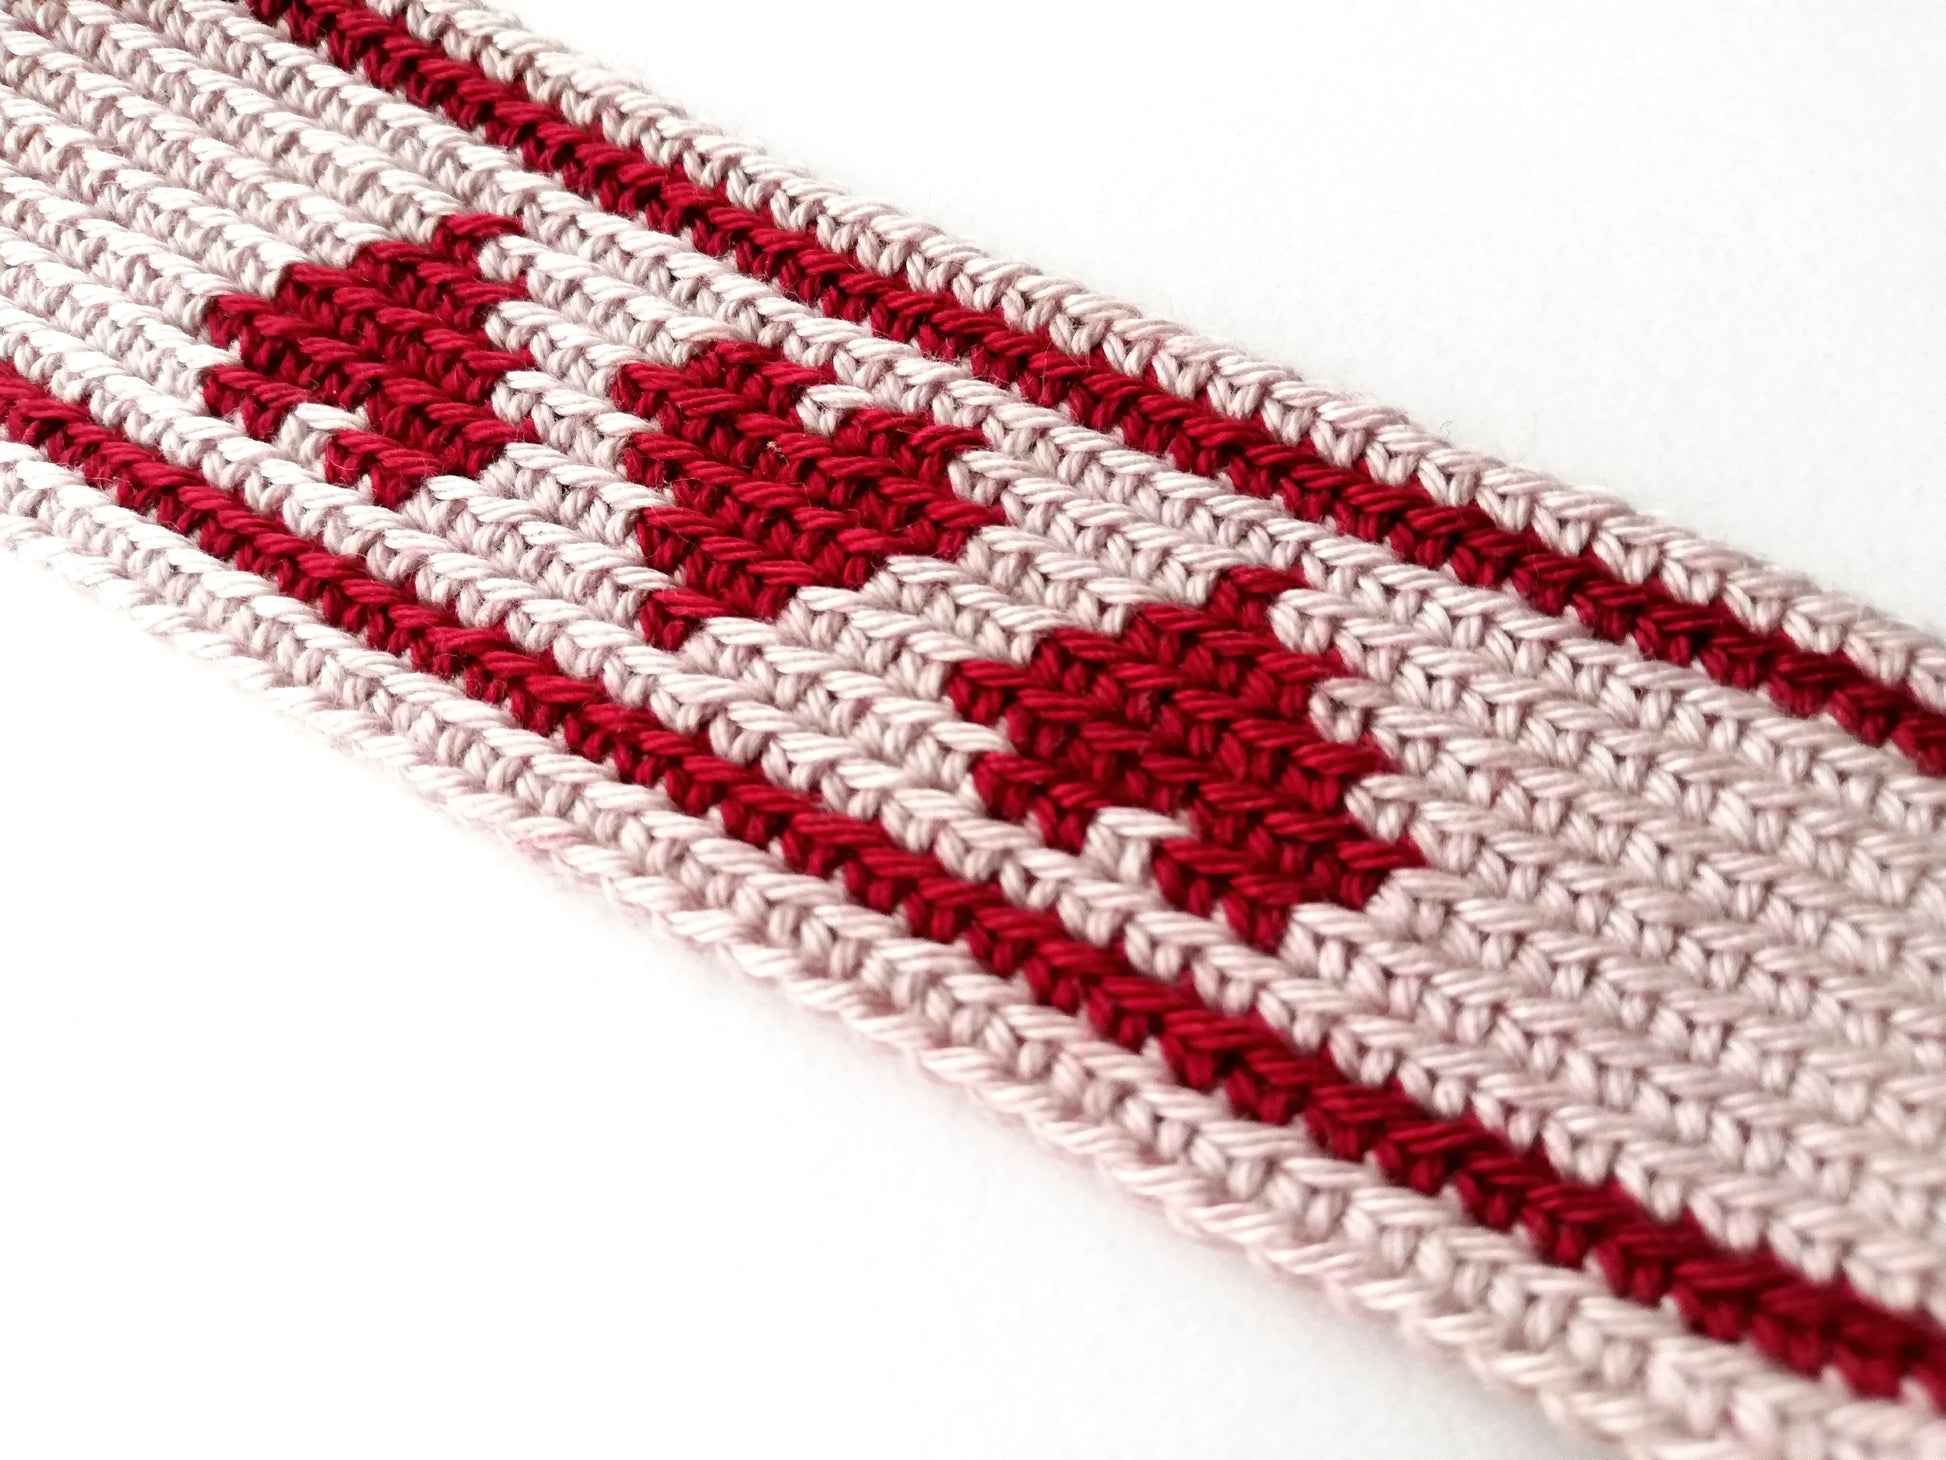 Tapestry Crochet Heart PDF Pattern 